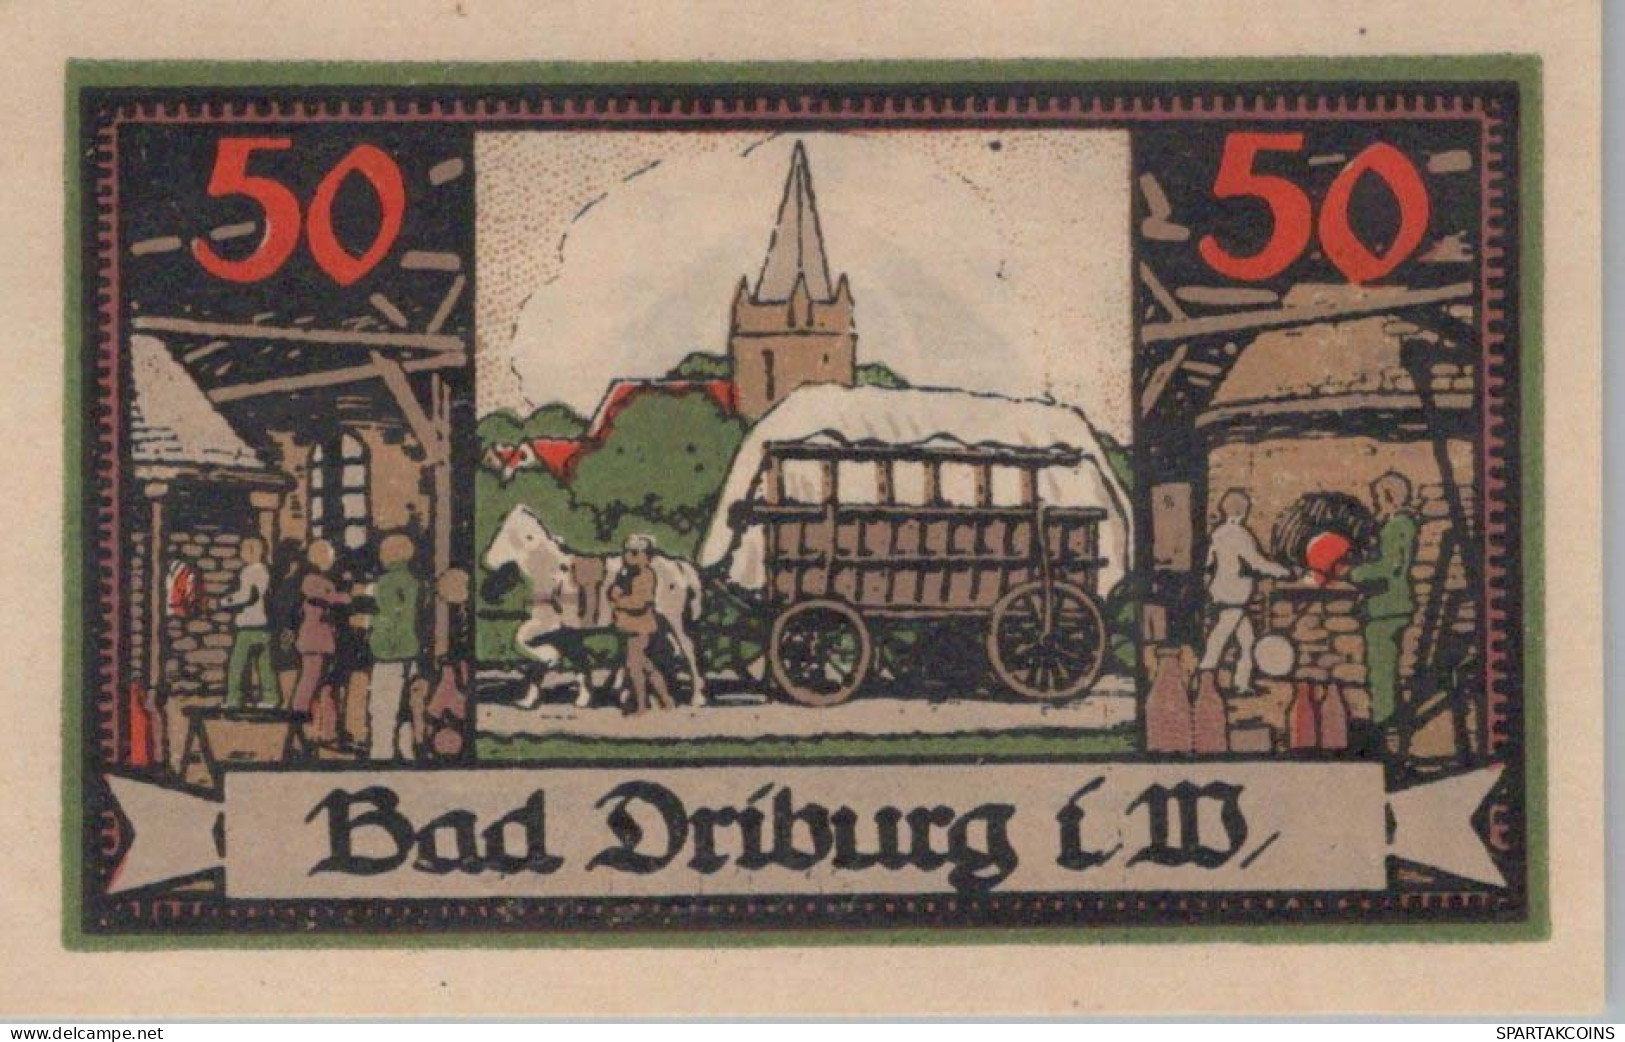 50 PFENNIG 1921 Stadt BAD DRIBURG Westphalia UNC DEUTSCHLAND Notgeld #PA499 - [11] Lokale Uitgaven